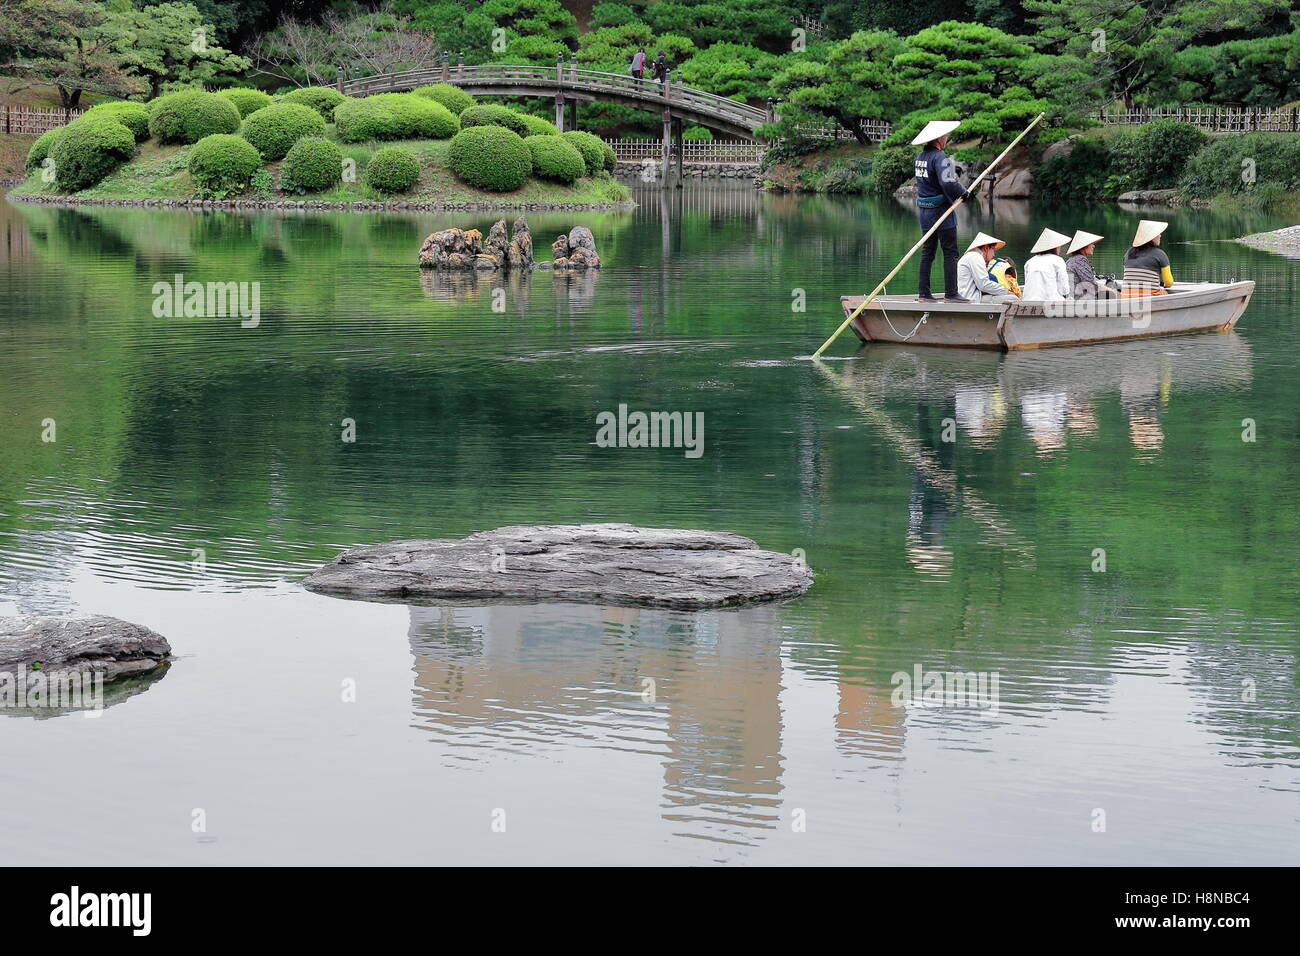 TAKAMATSU, Japon-OCTOBRE 19 : Ritsurin Koen-Chestnut Grove Garden propose des excursions en bateau vers les visiteurs sur le Nanko-South Pond. Banque D'Images